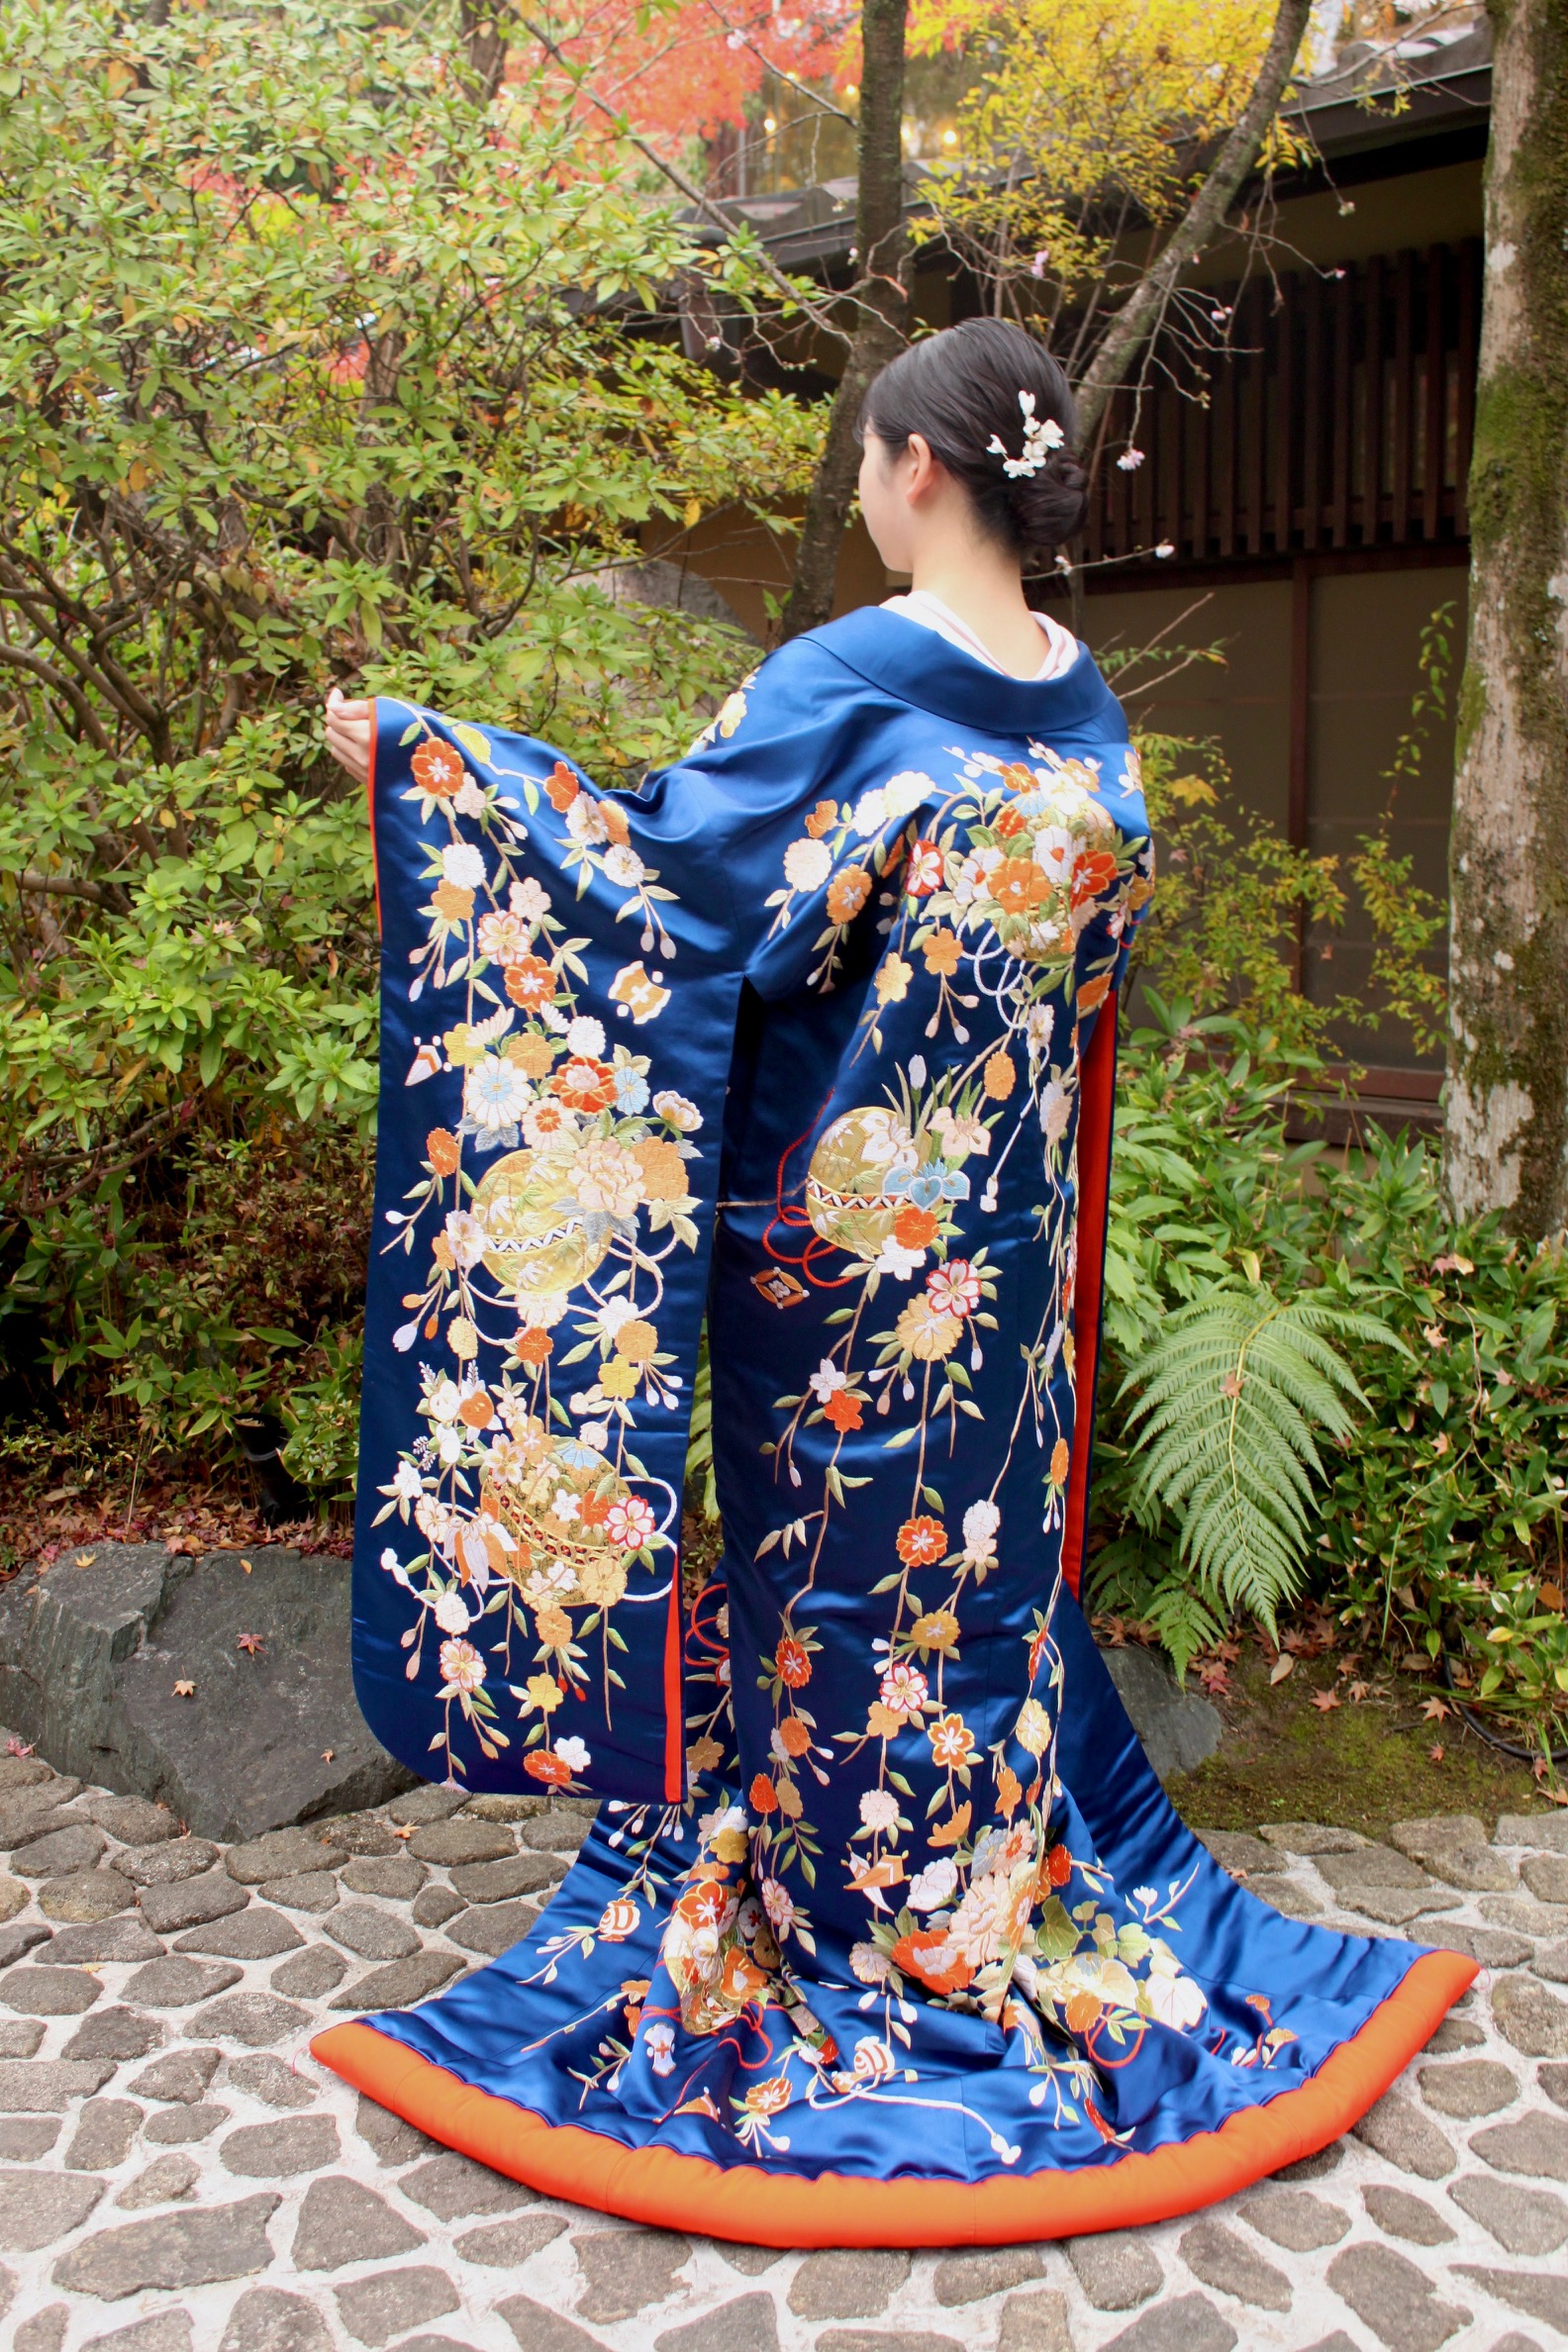 京都エリアの和の雰囲気感じれる結婚式会場や前撮りにおすすめの青色が鮮やかな新作色打掛です